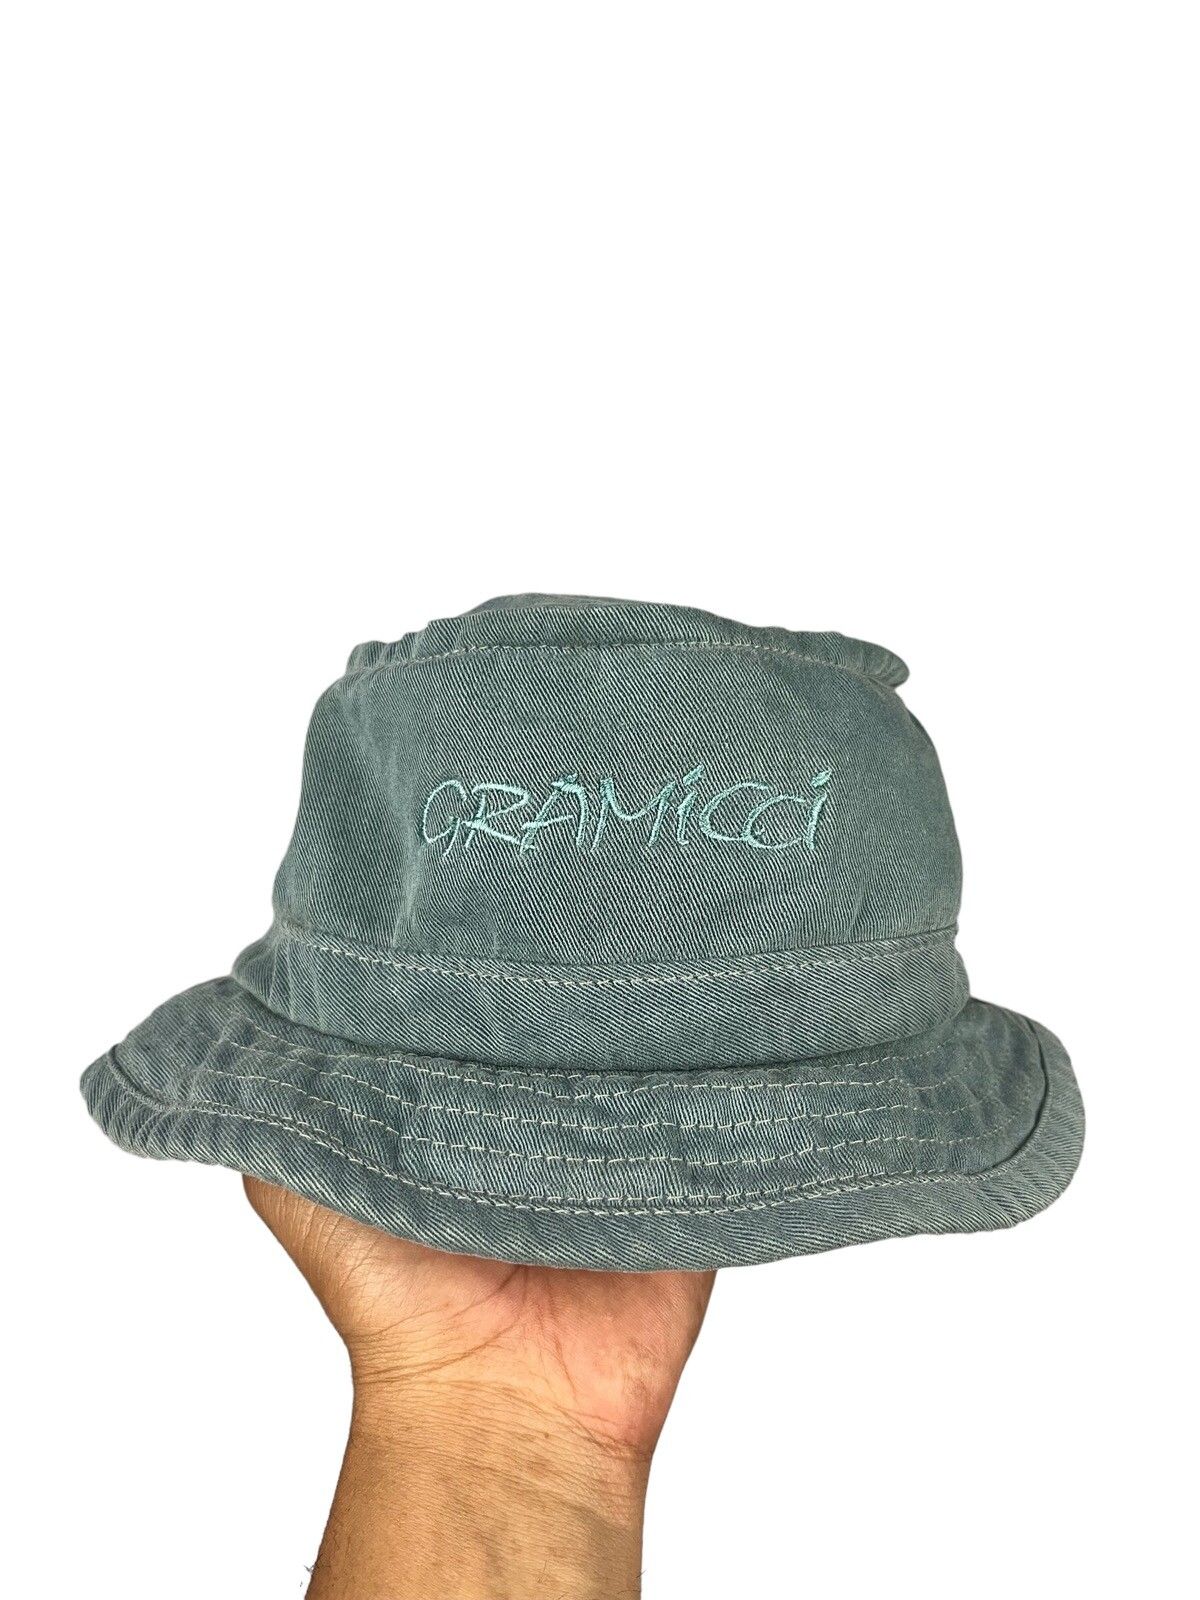 Gramicci Gramicci Hat Spellout logo | Grailed